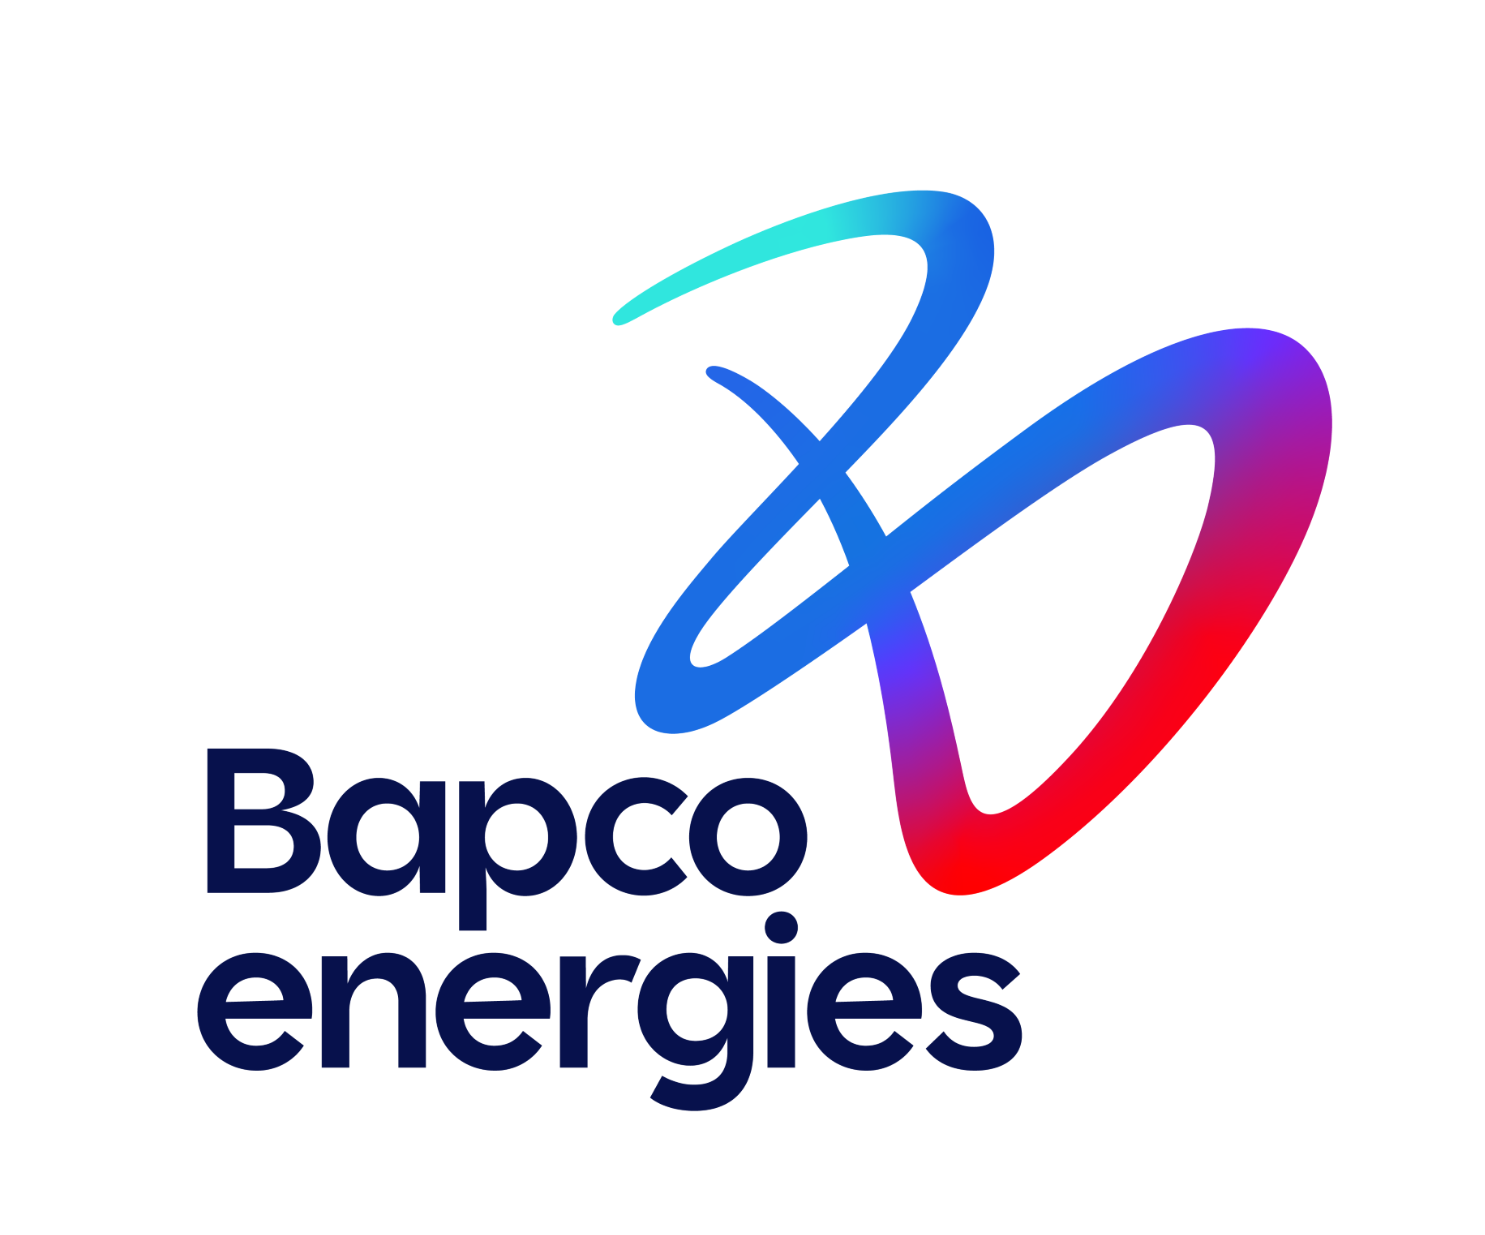 Bapco Energies logo gpj.PNG